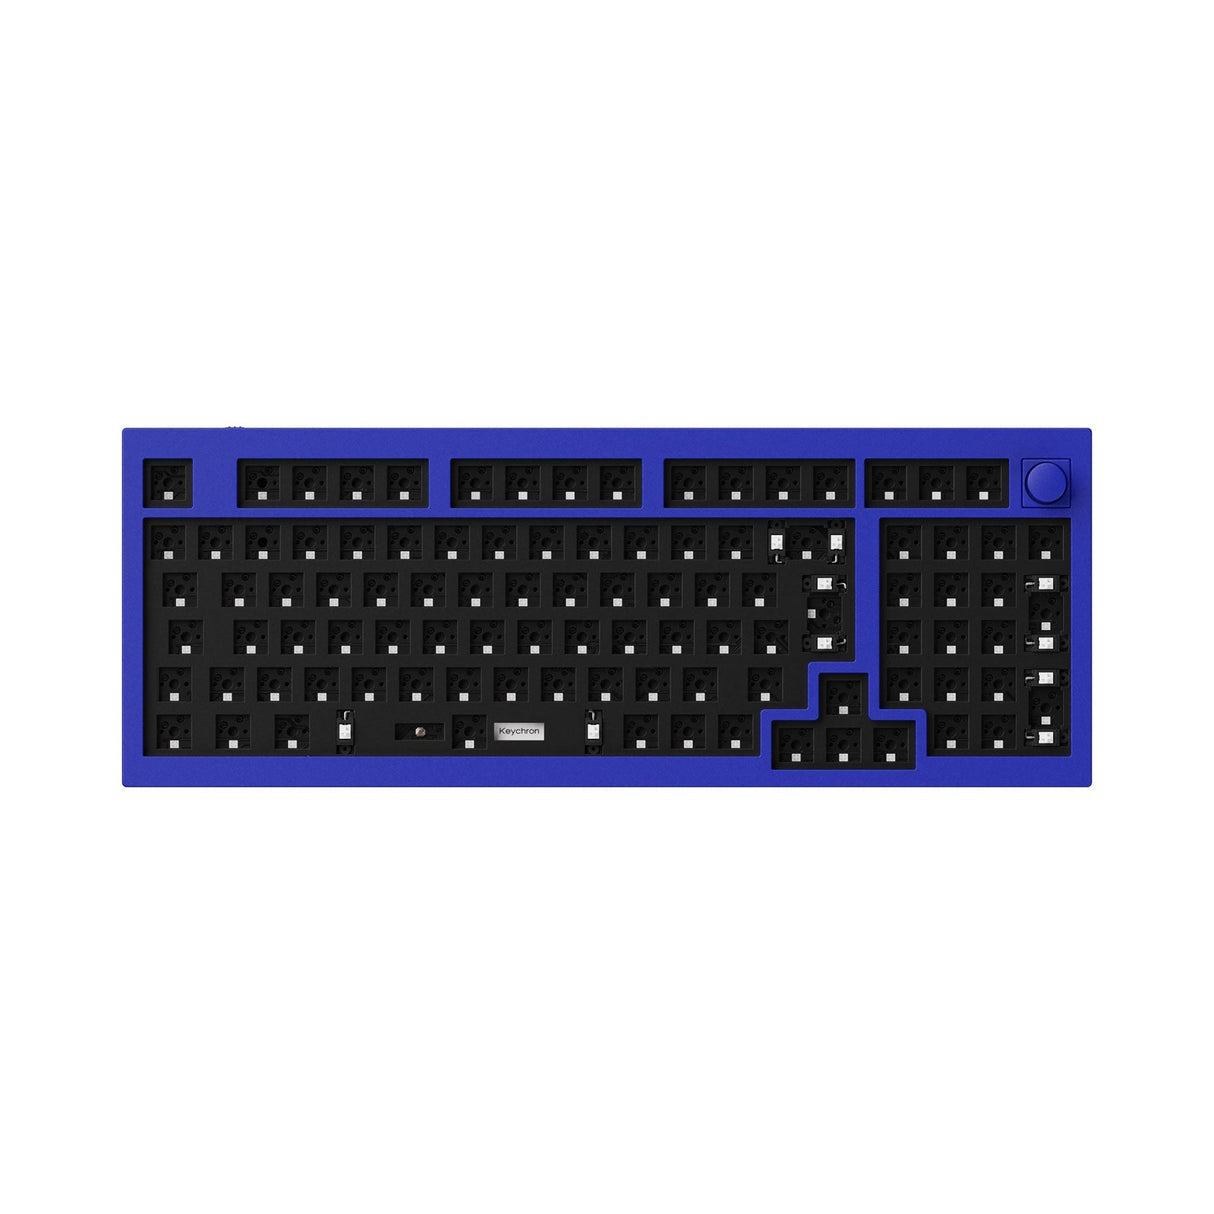 Keychron Q5 QMK Benutzerdefinierte mechanische Tastatur (US-ANSI-Layout)